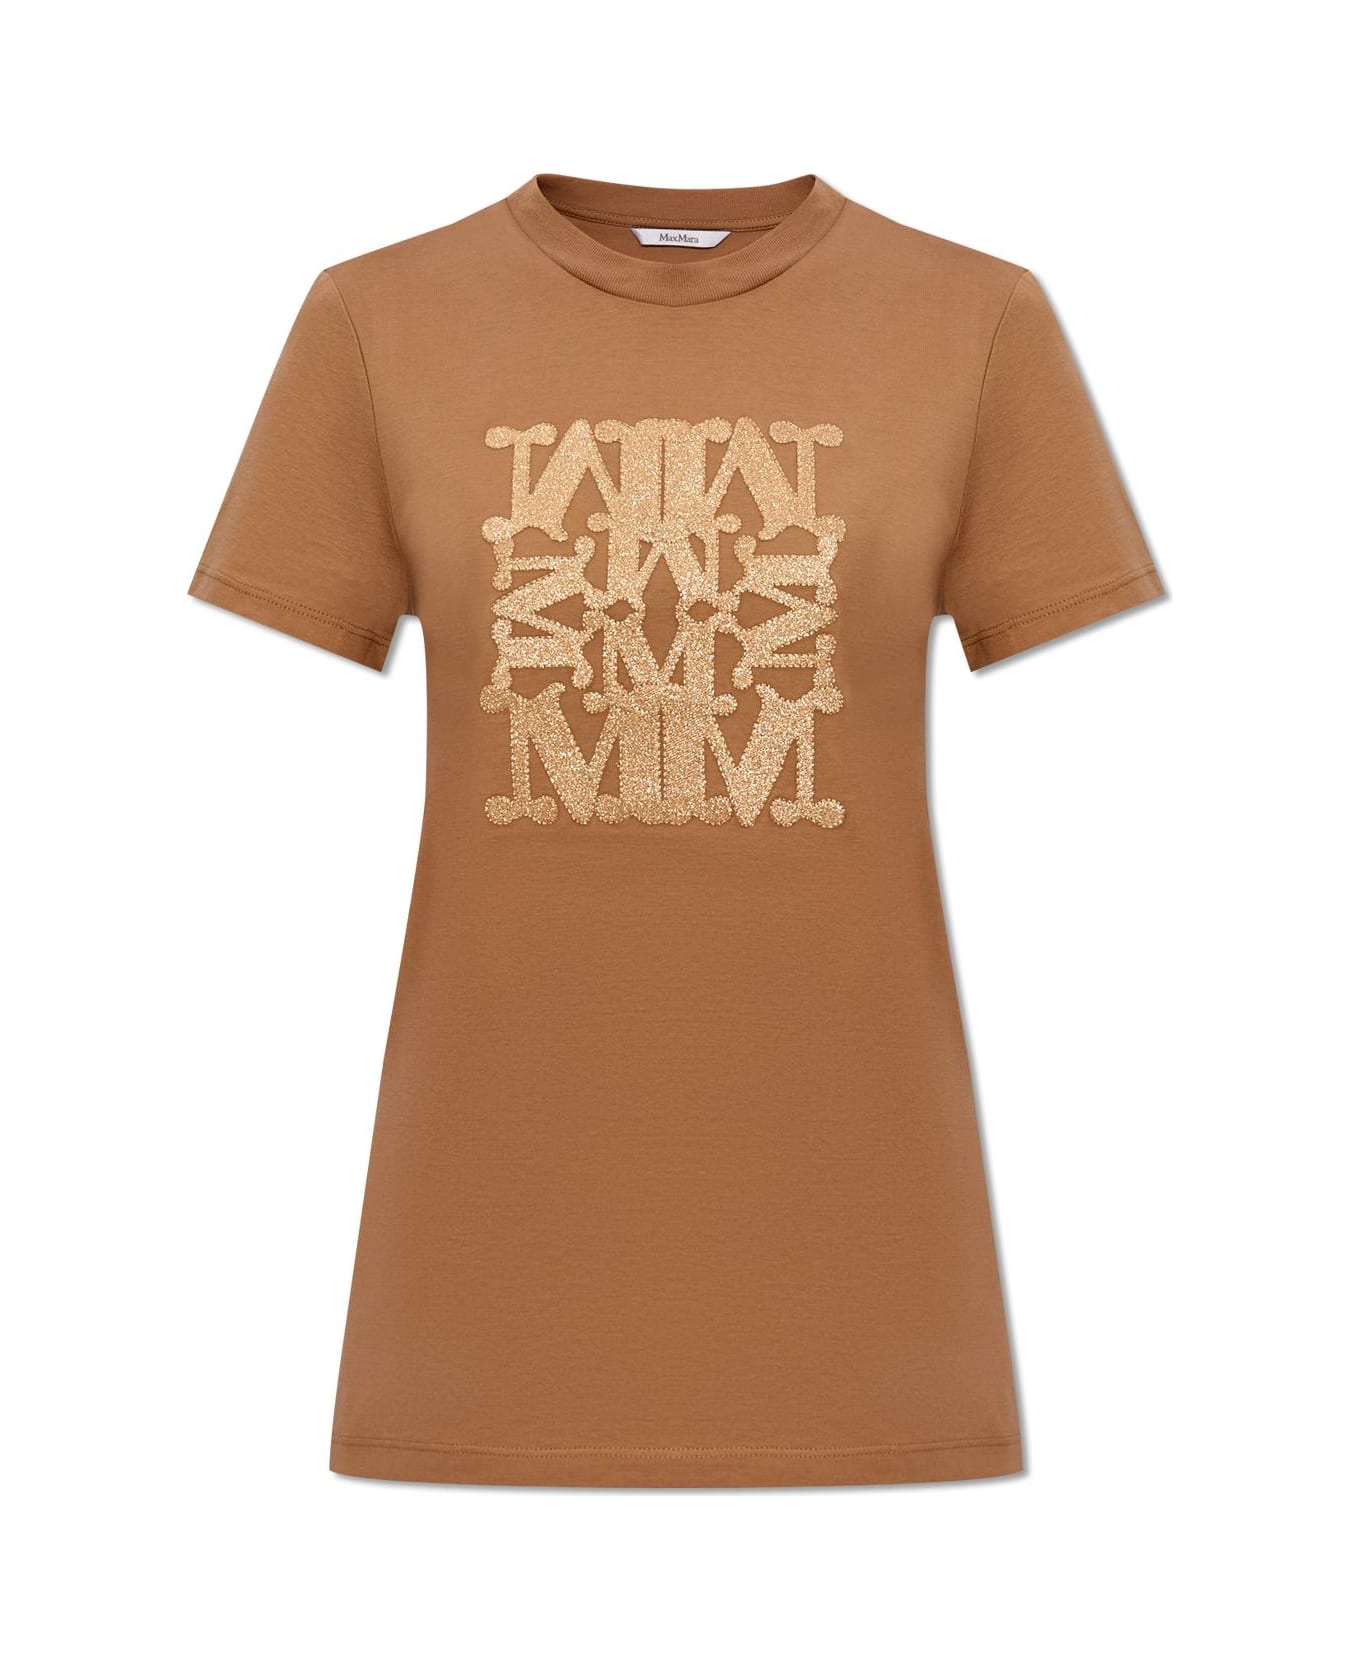 Max Mara 'taverna' T-shirt - BROWN/GOLD Tシャツ